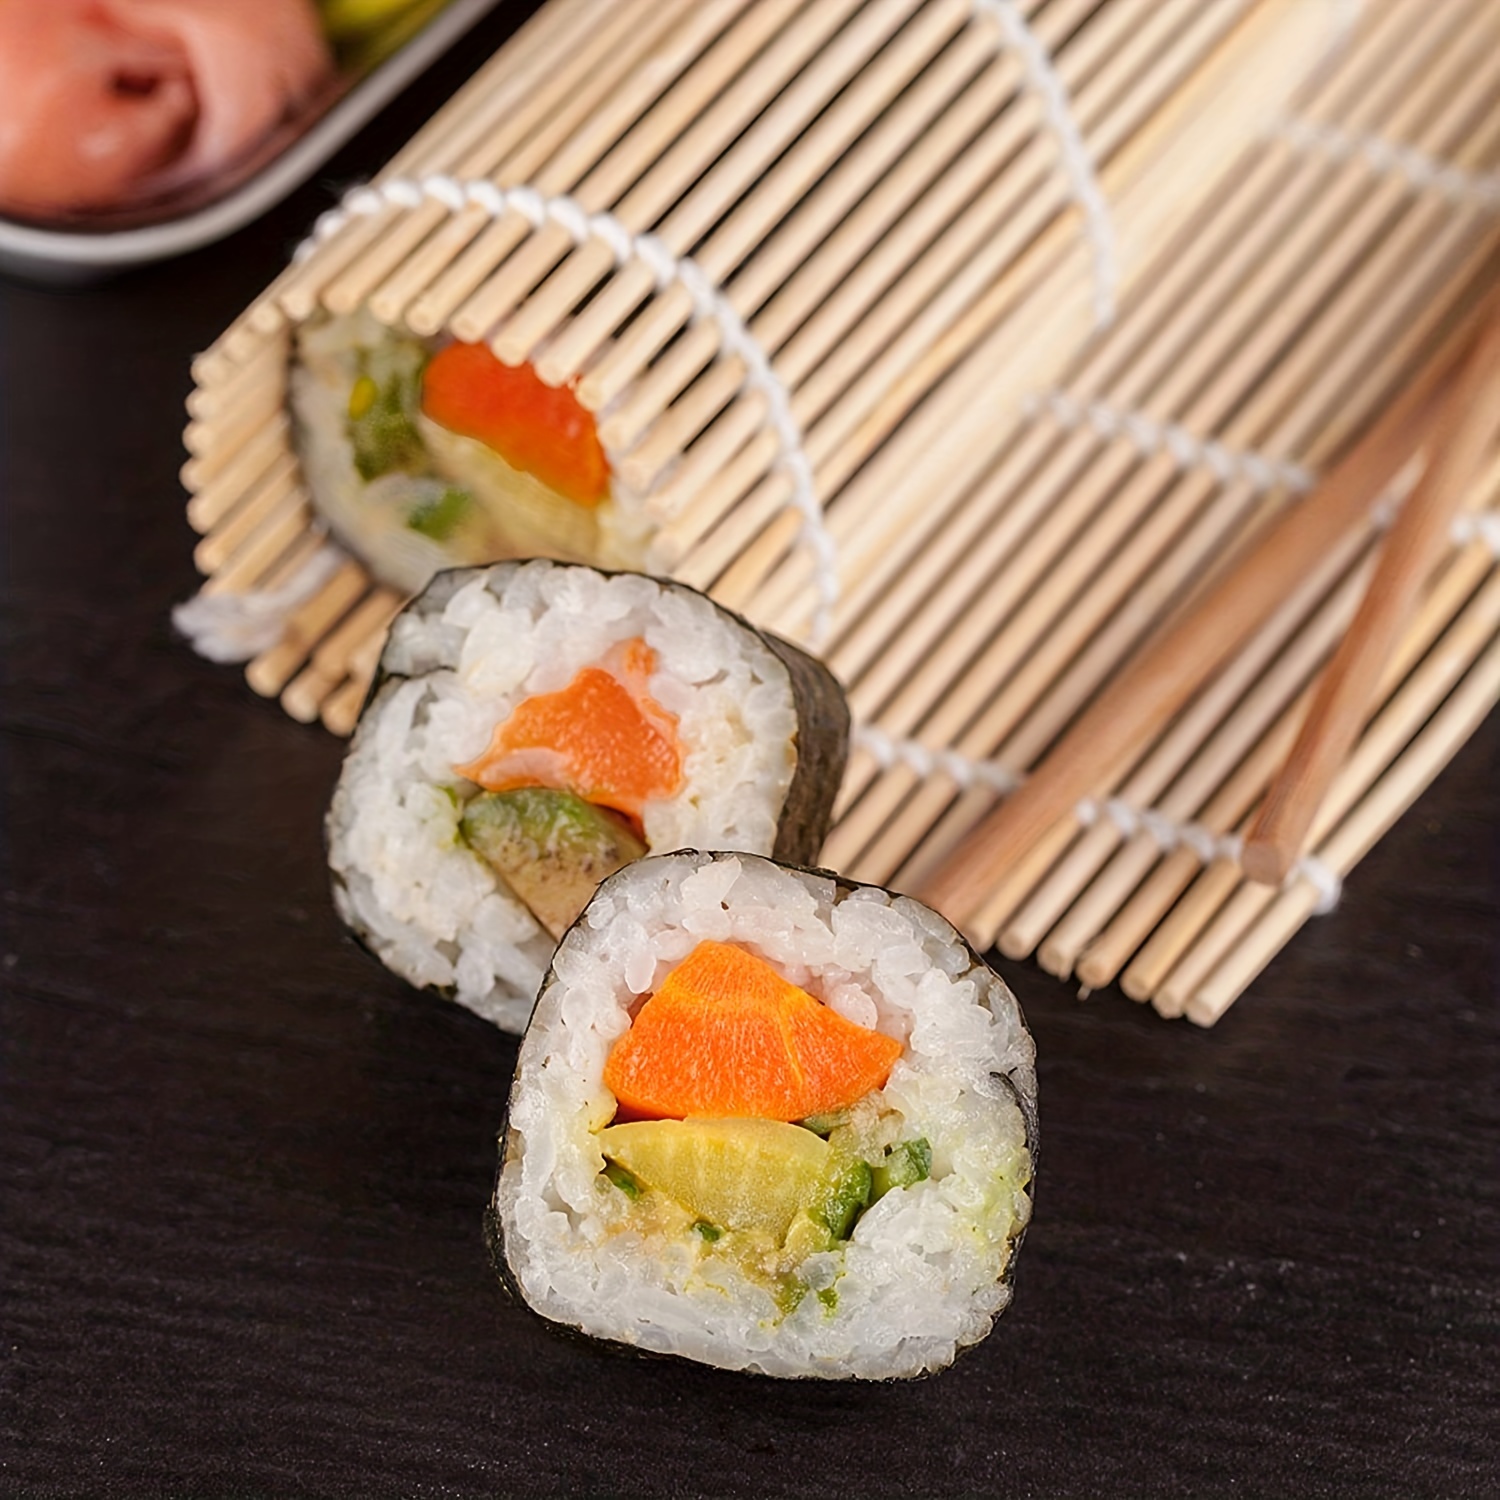 Sushi Making Kit, Sushi Roller Set, Sushi Maker Kit, Bamboo